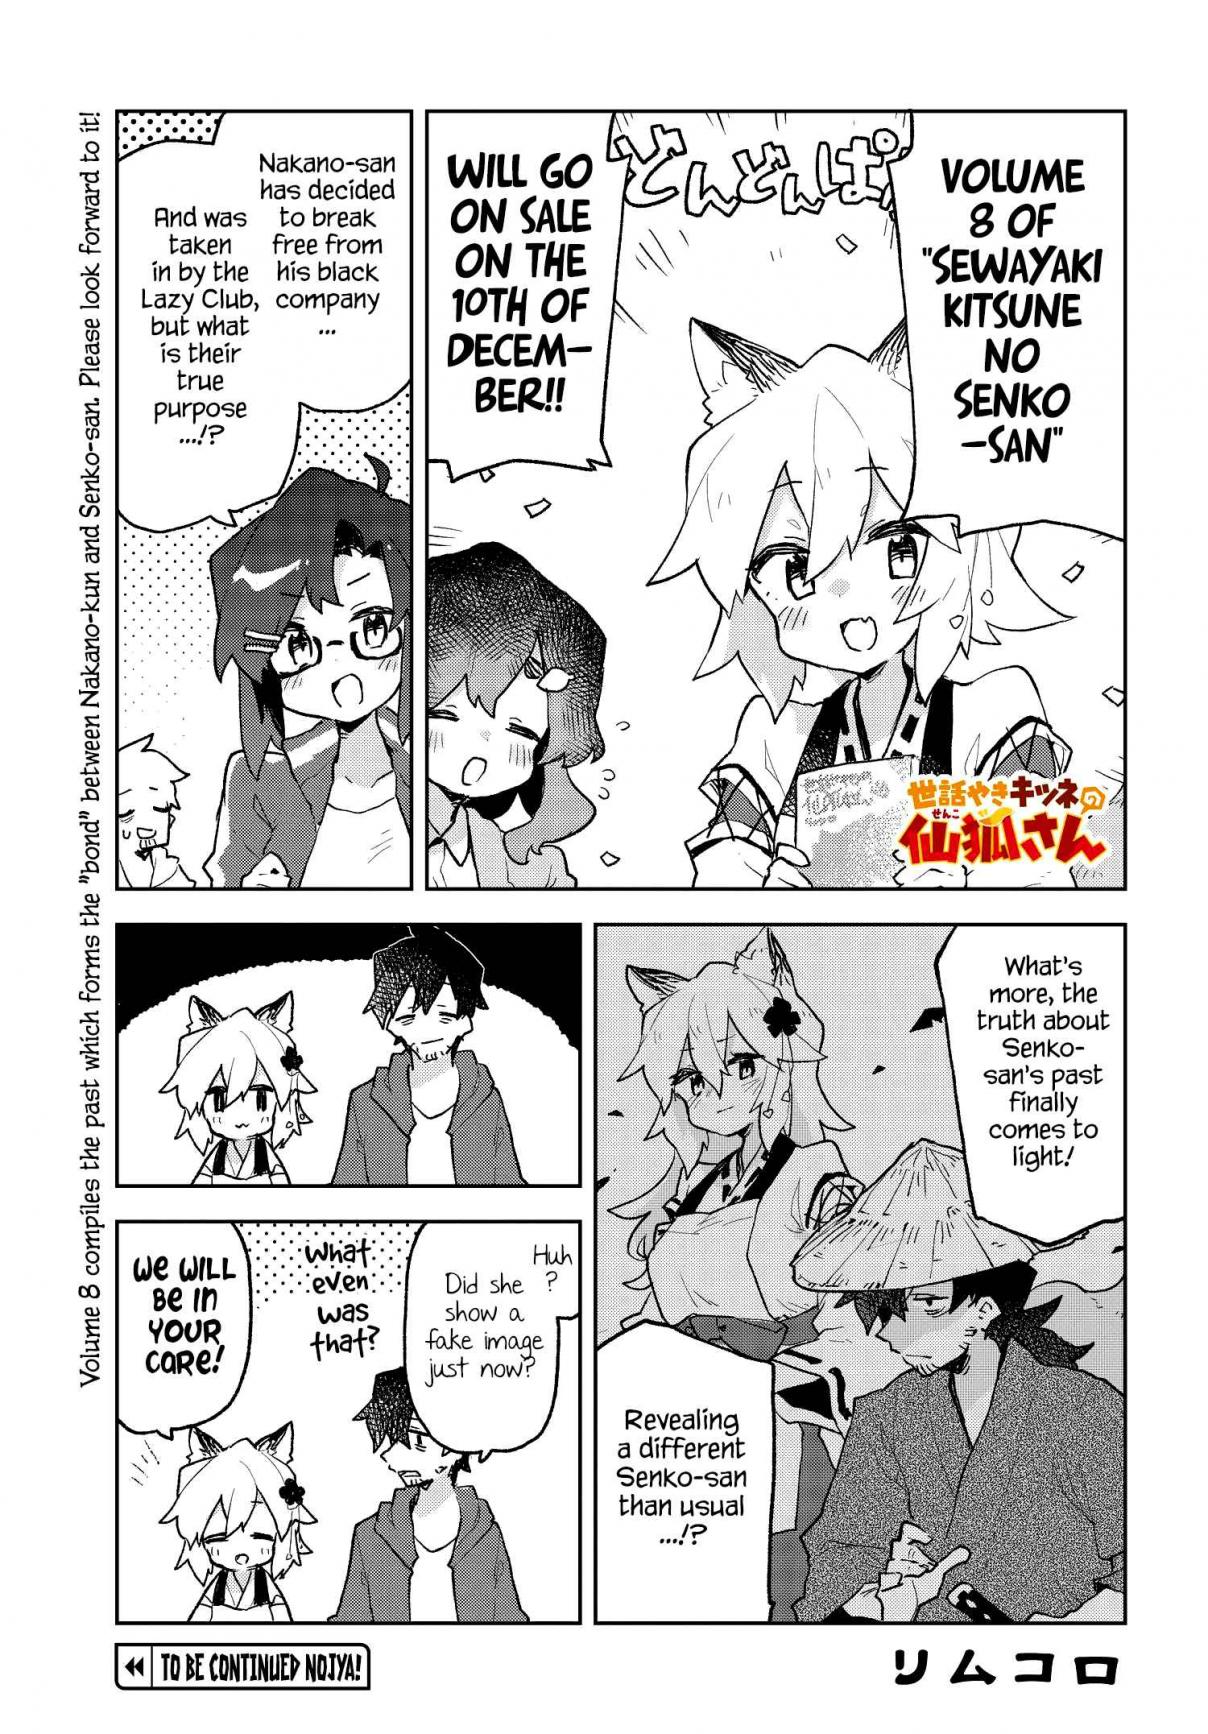 Sewayaki Kitsune no Senko san Vol. 8 Ch. 61.4 Volume 8 Announcement